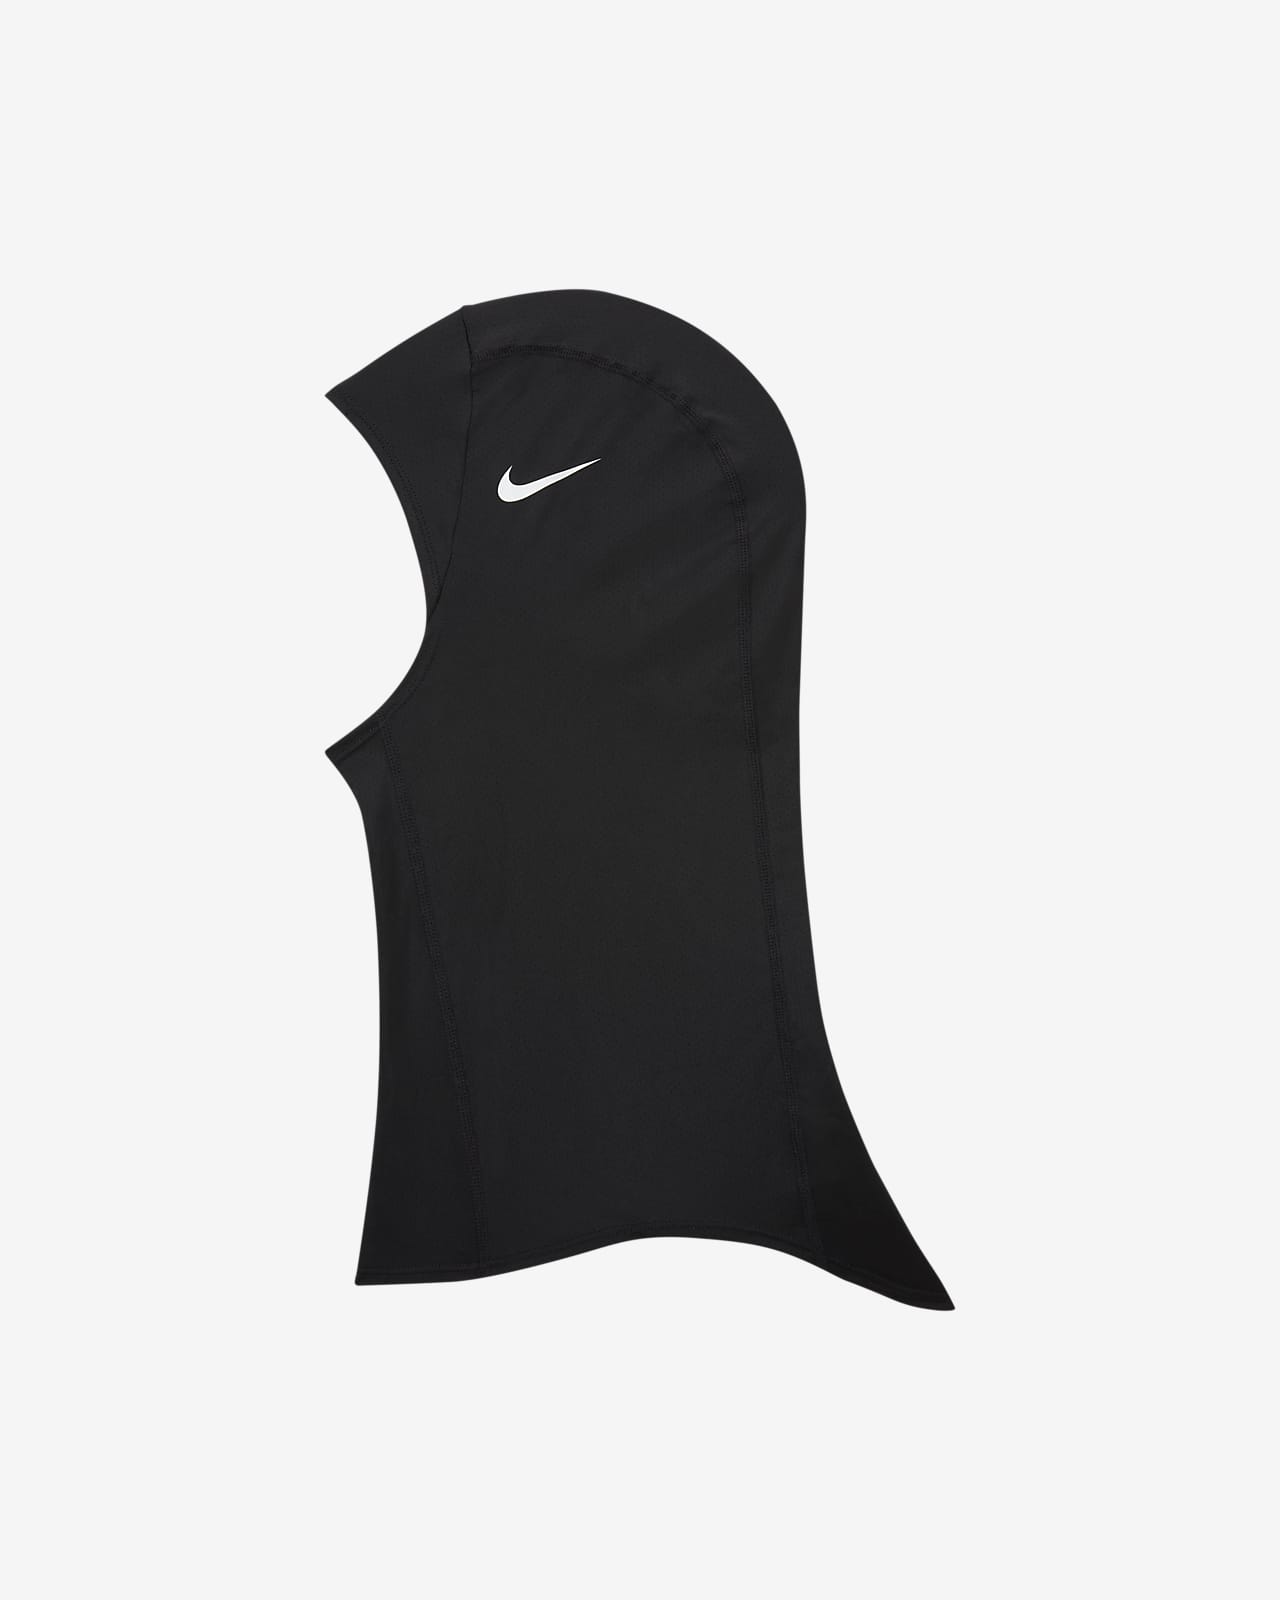 Beperking De waarheid vertellen verlangen Nike Pro Hijab 2.0. Nike.com